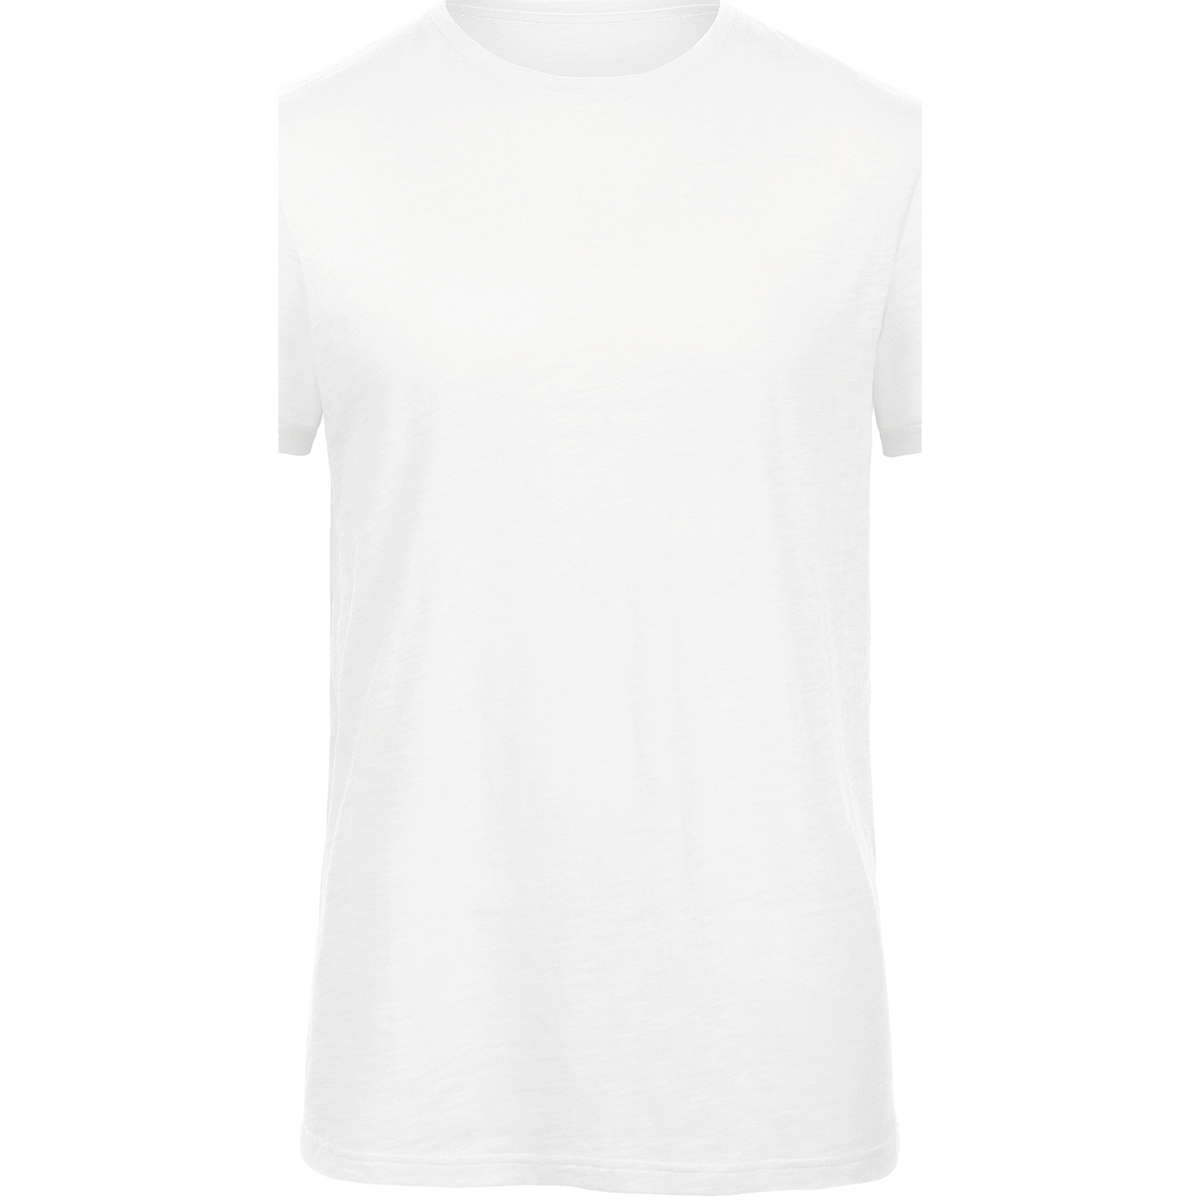 Abbigliamento Uomo T-shirts a maniche lunghe B&c Inspire Bianco